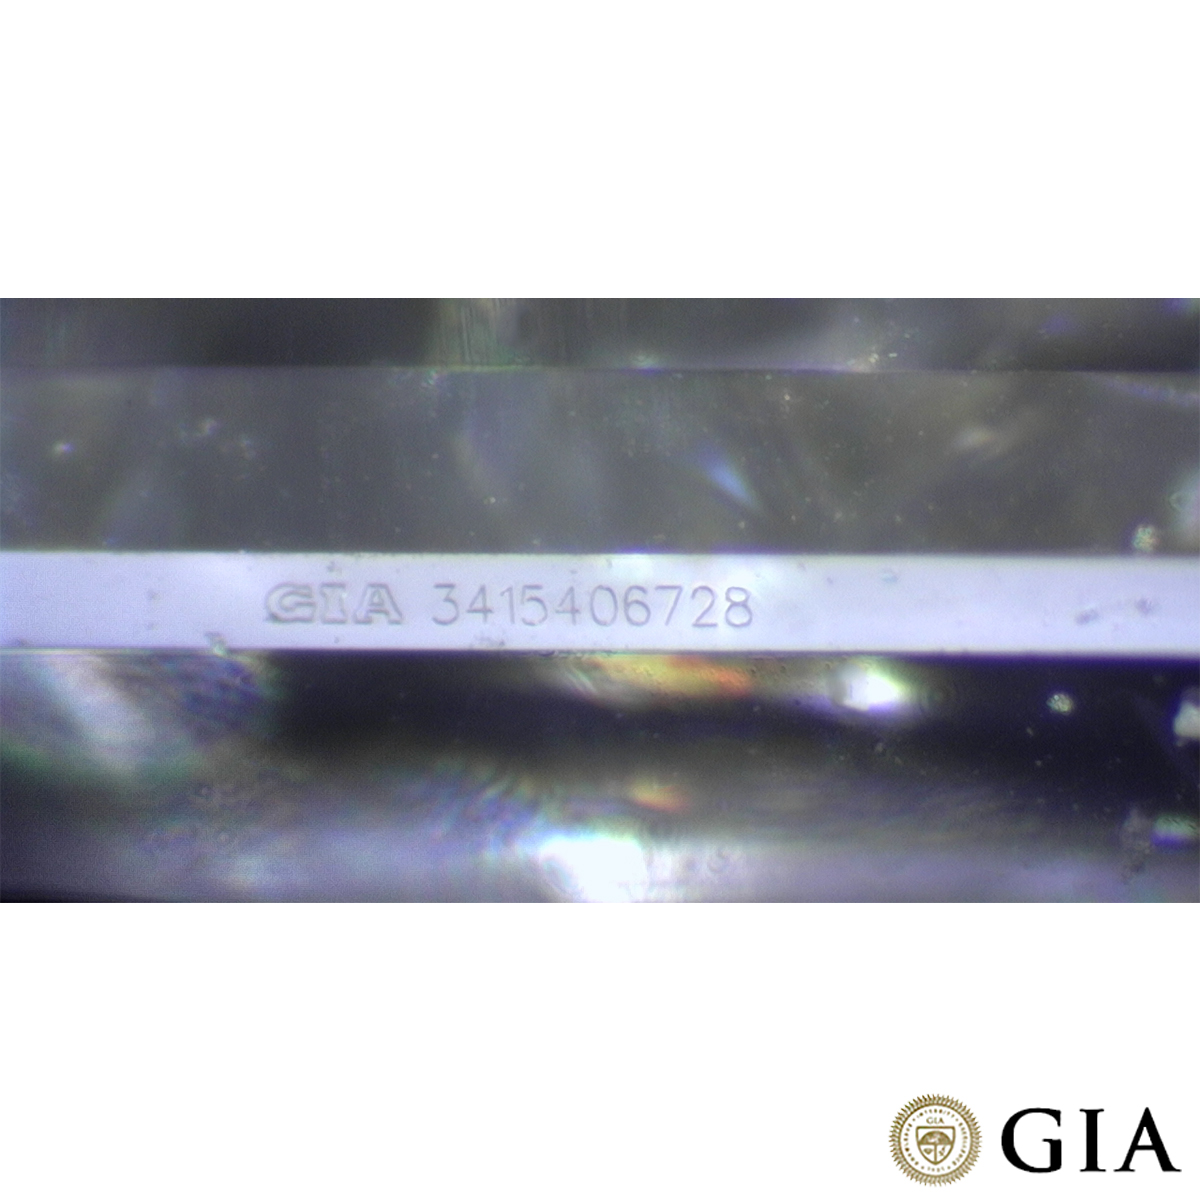 White Gold Emerald Cut Diamond Pendant 0.41ct E/SI1